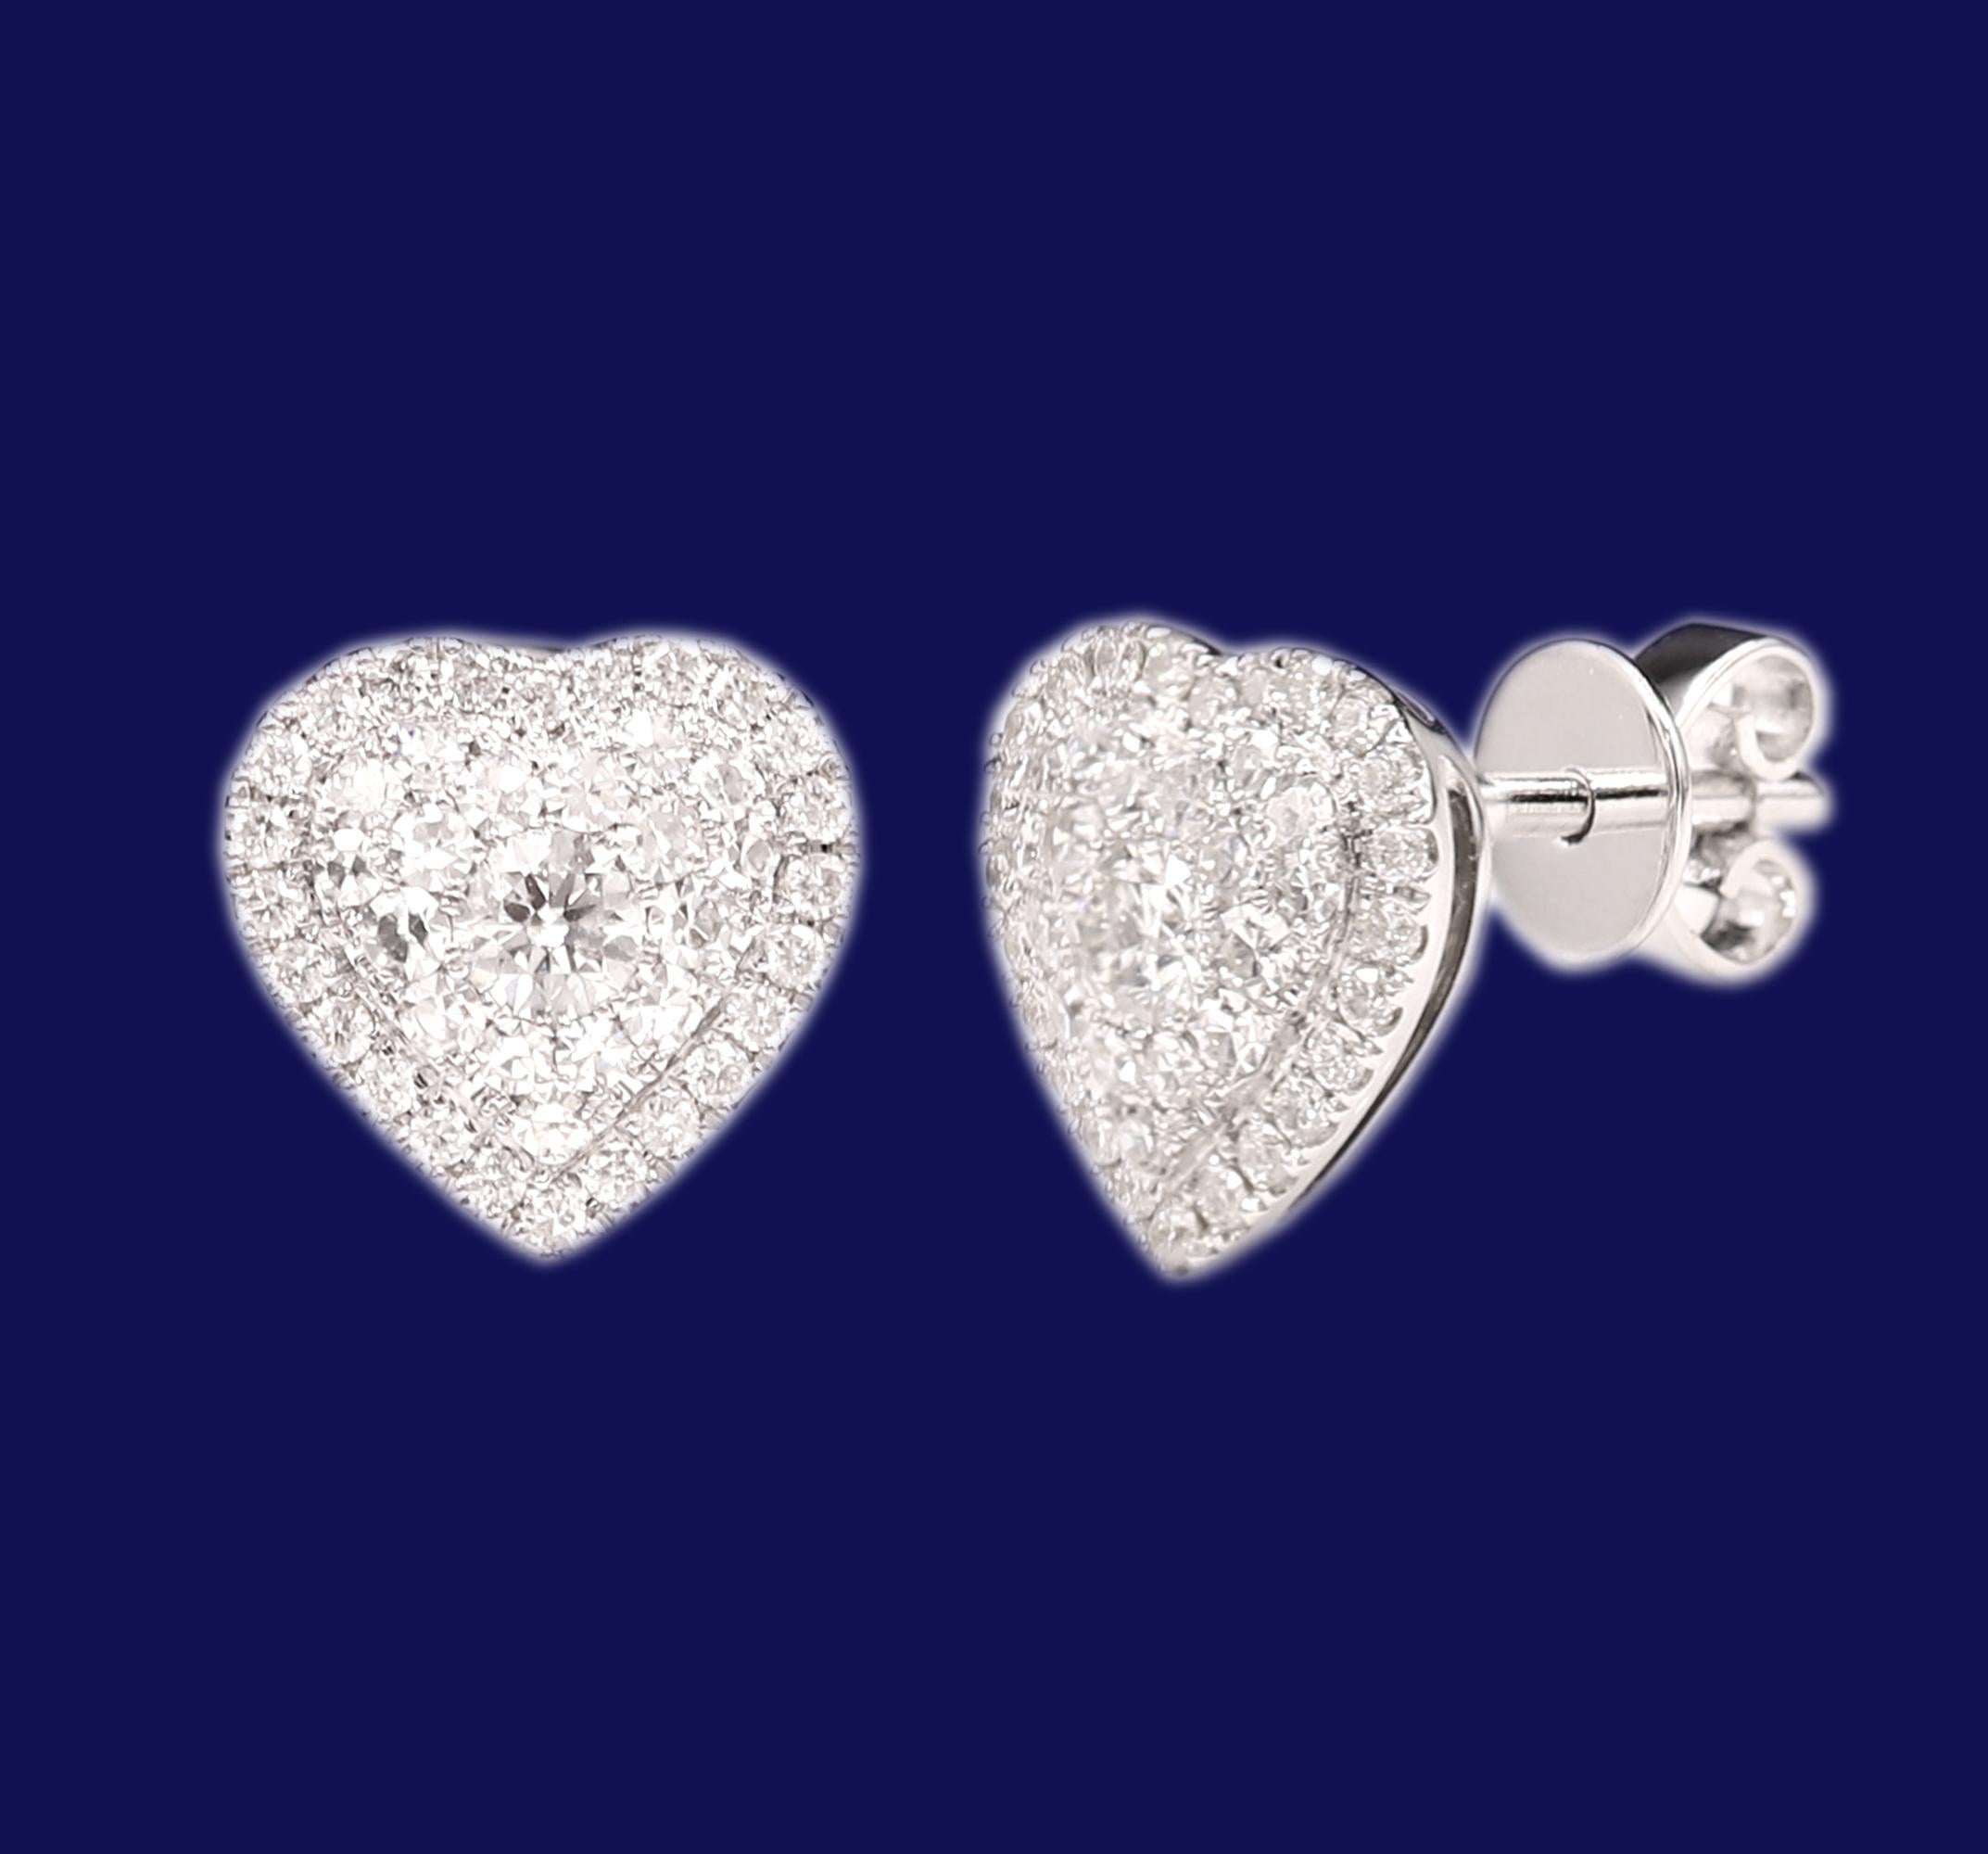 Cluster Diamond Heart Earrings 18 Karat White Gold Heart Studs For Sale 1